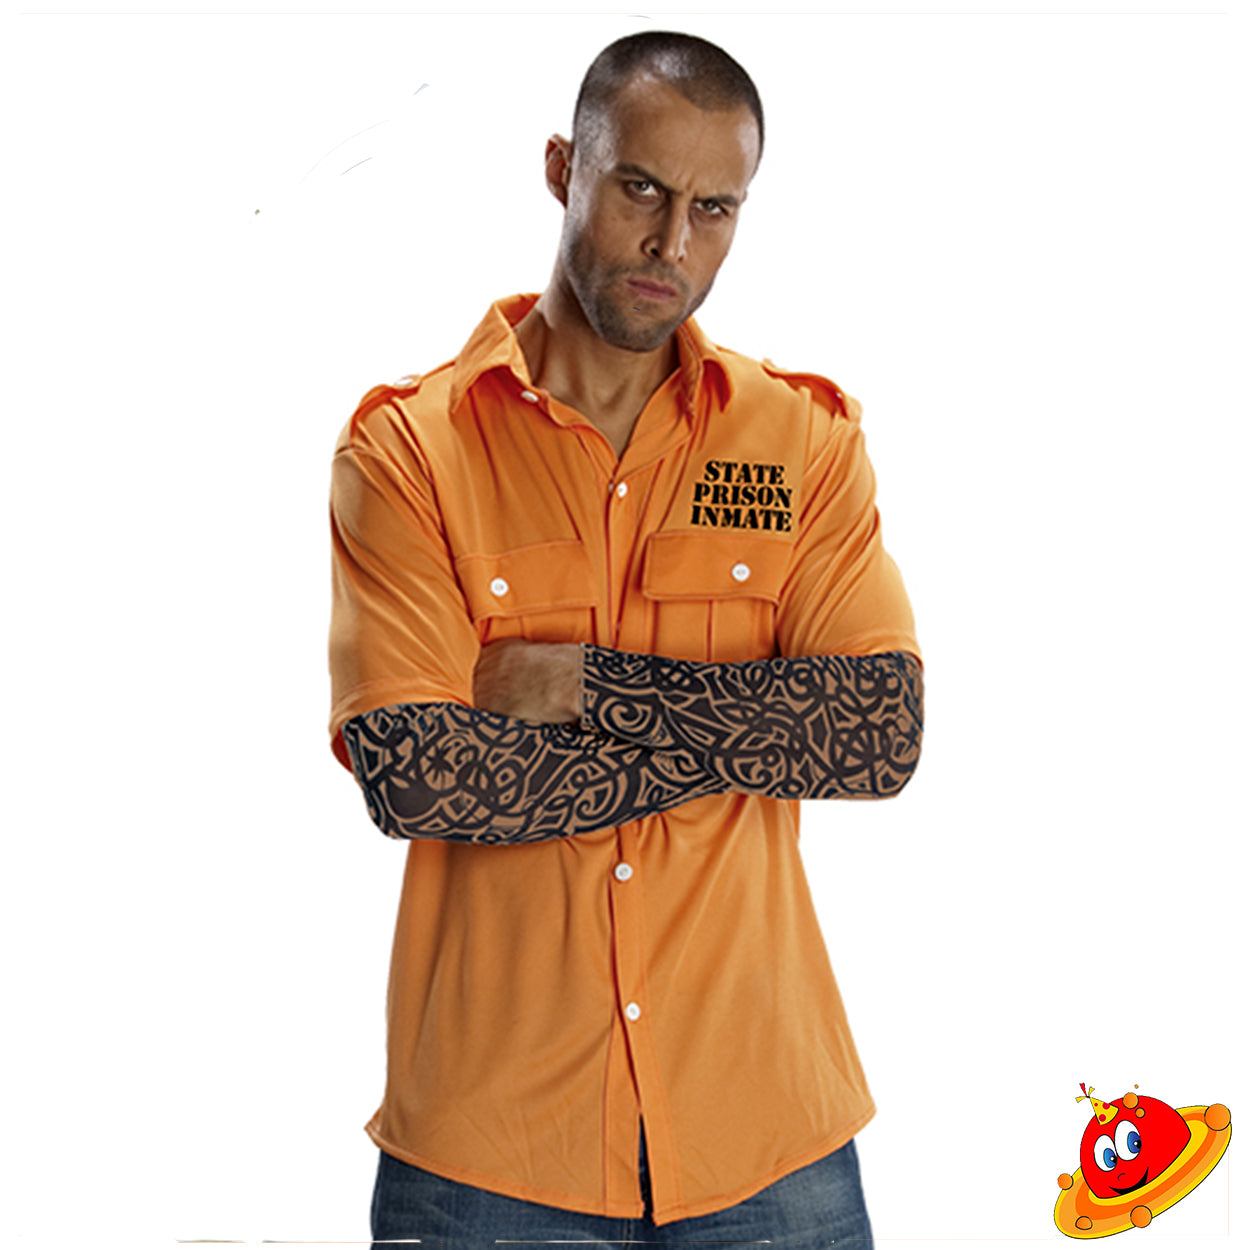 Costume Uomo Carcerato Prigioniero Camicia Arancione con maniche tatuate Tg 52/54